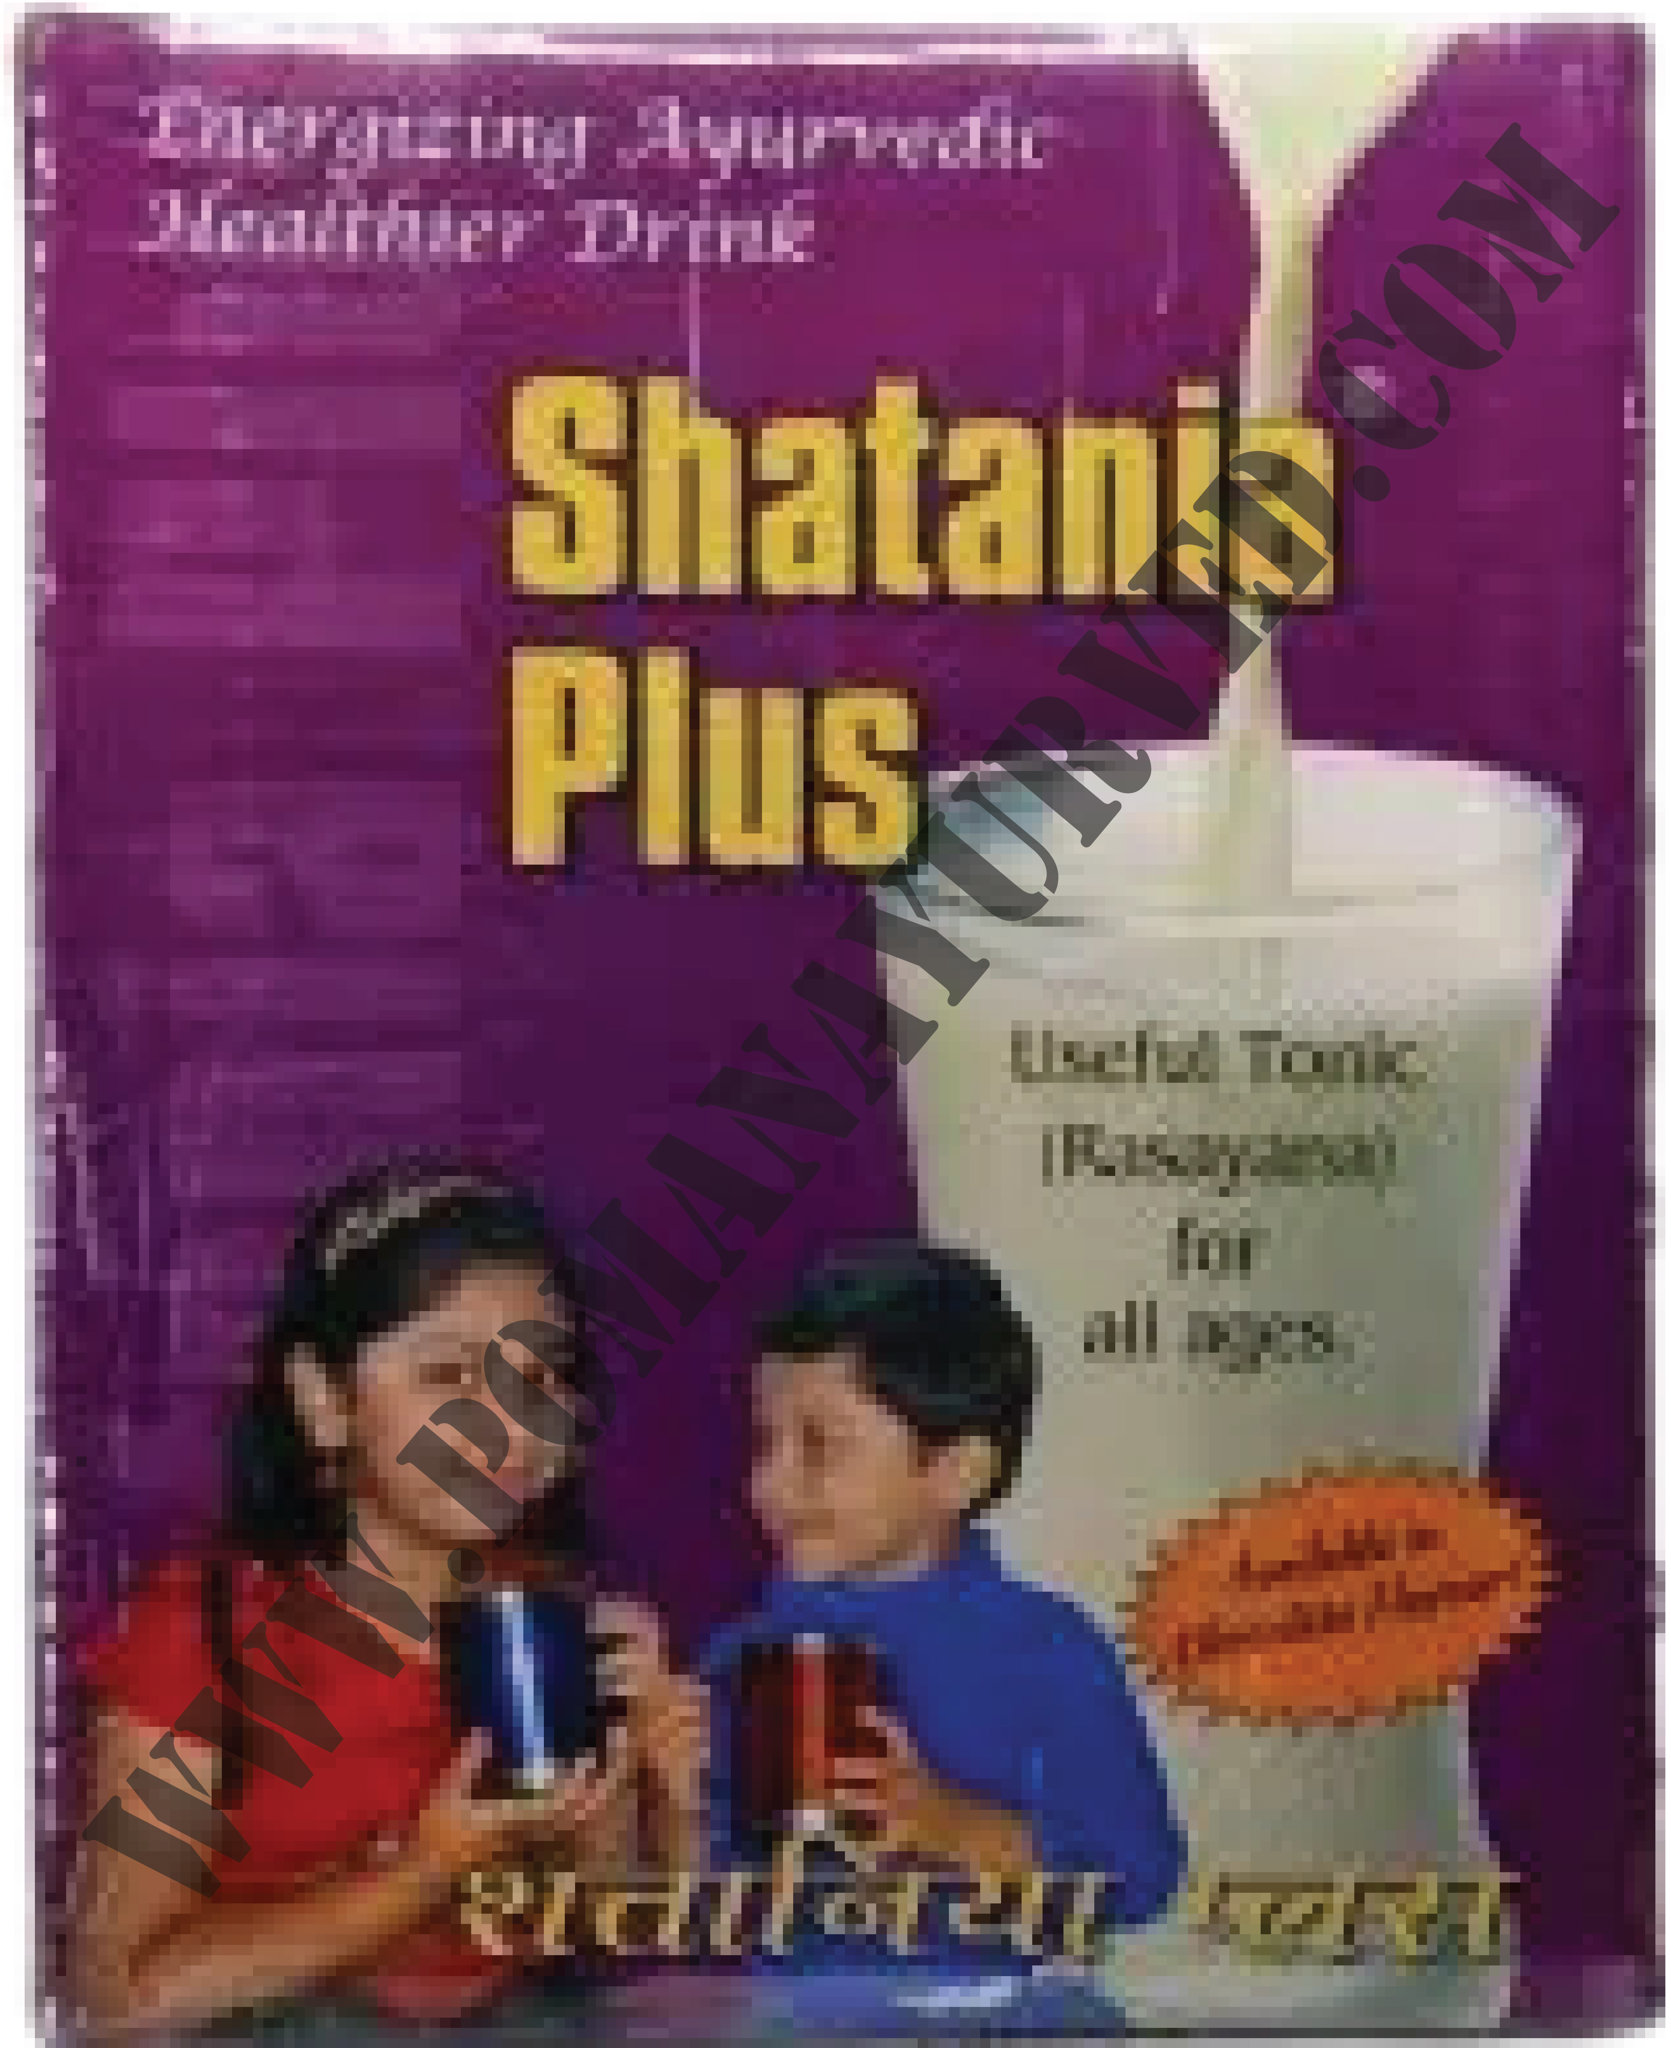 Picture of Shatania Plus